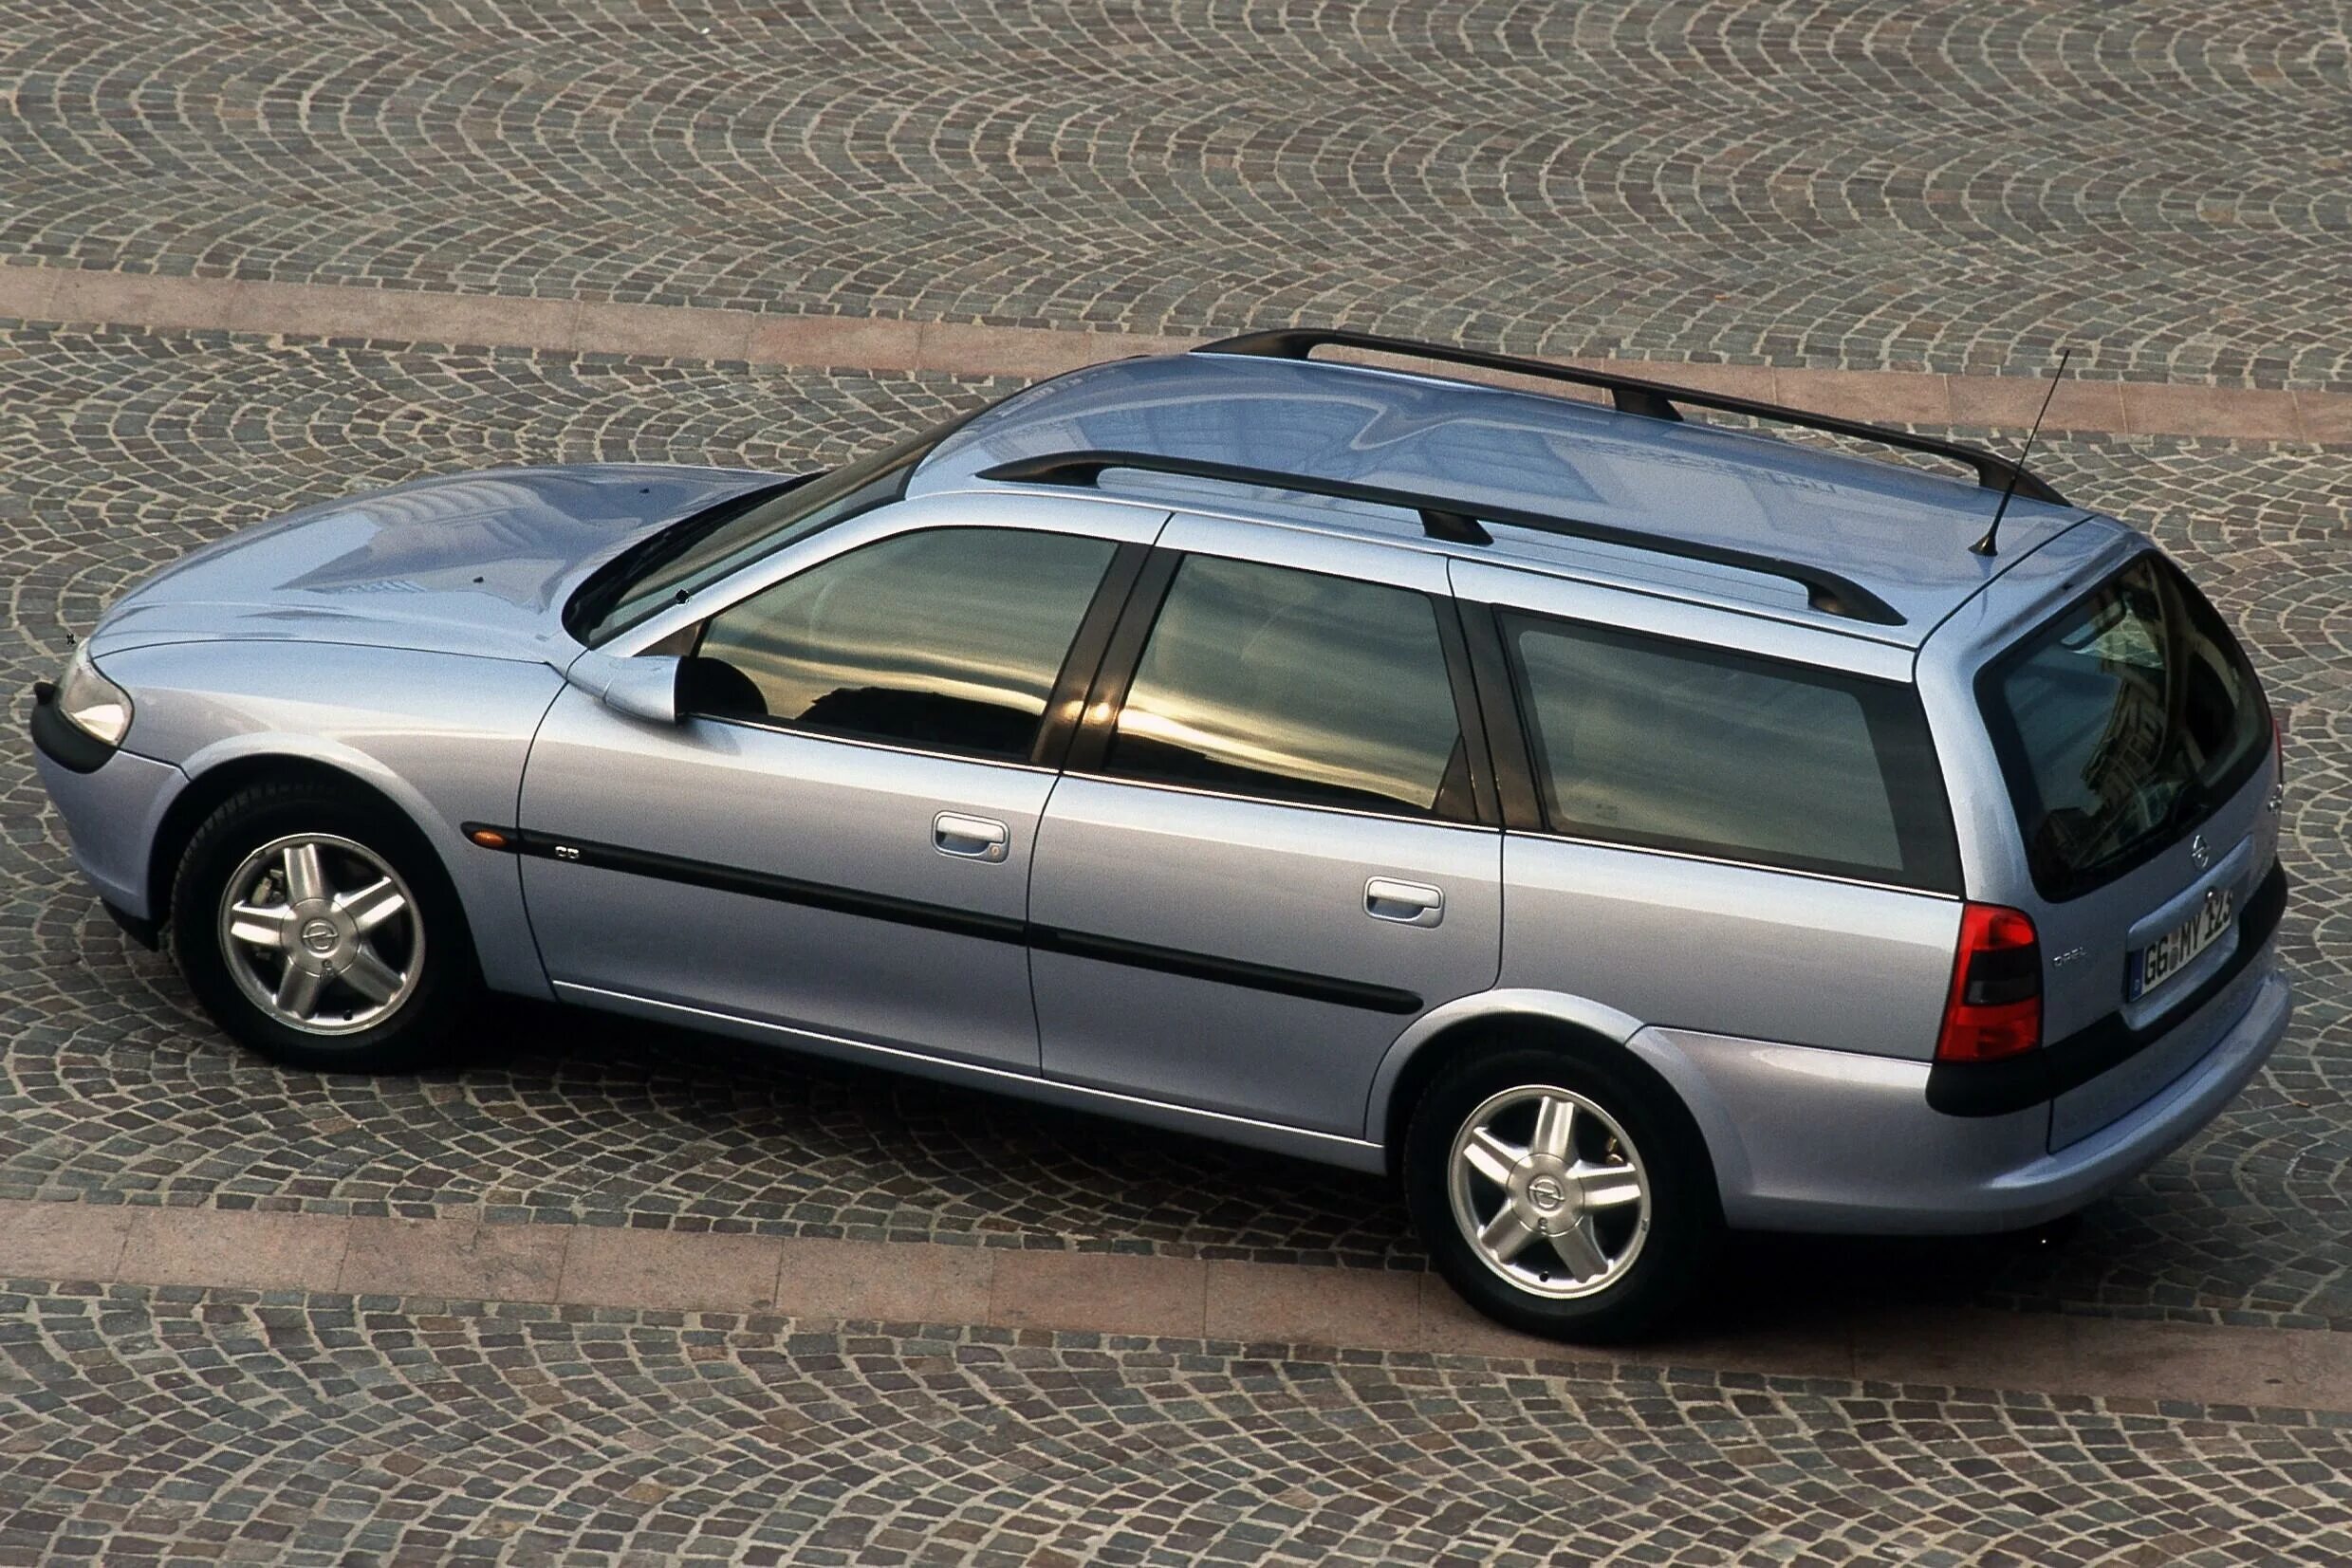 Opel Vectra Caravan. Opel Vectra b 1998 универсал. Opel Vectra b универсал 1999. Опель Вектра b универсал 1998. Вектра караван